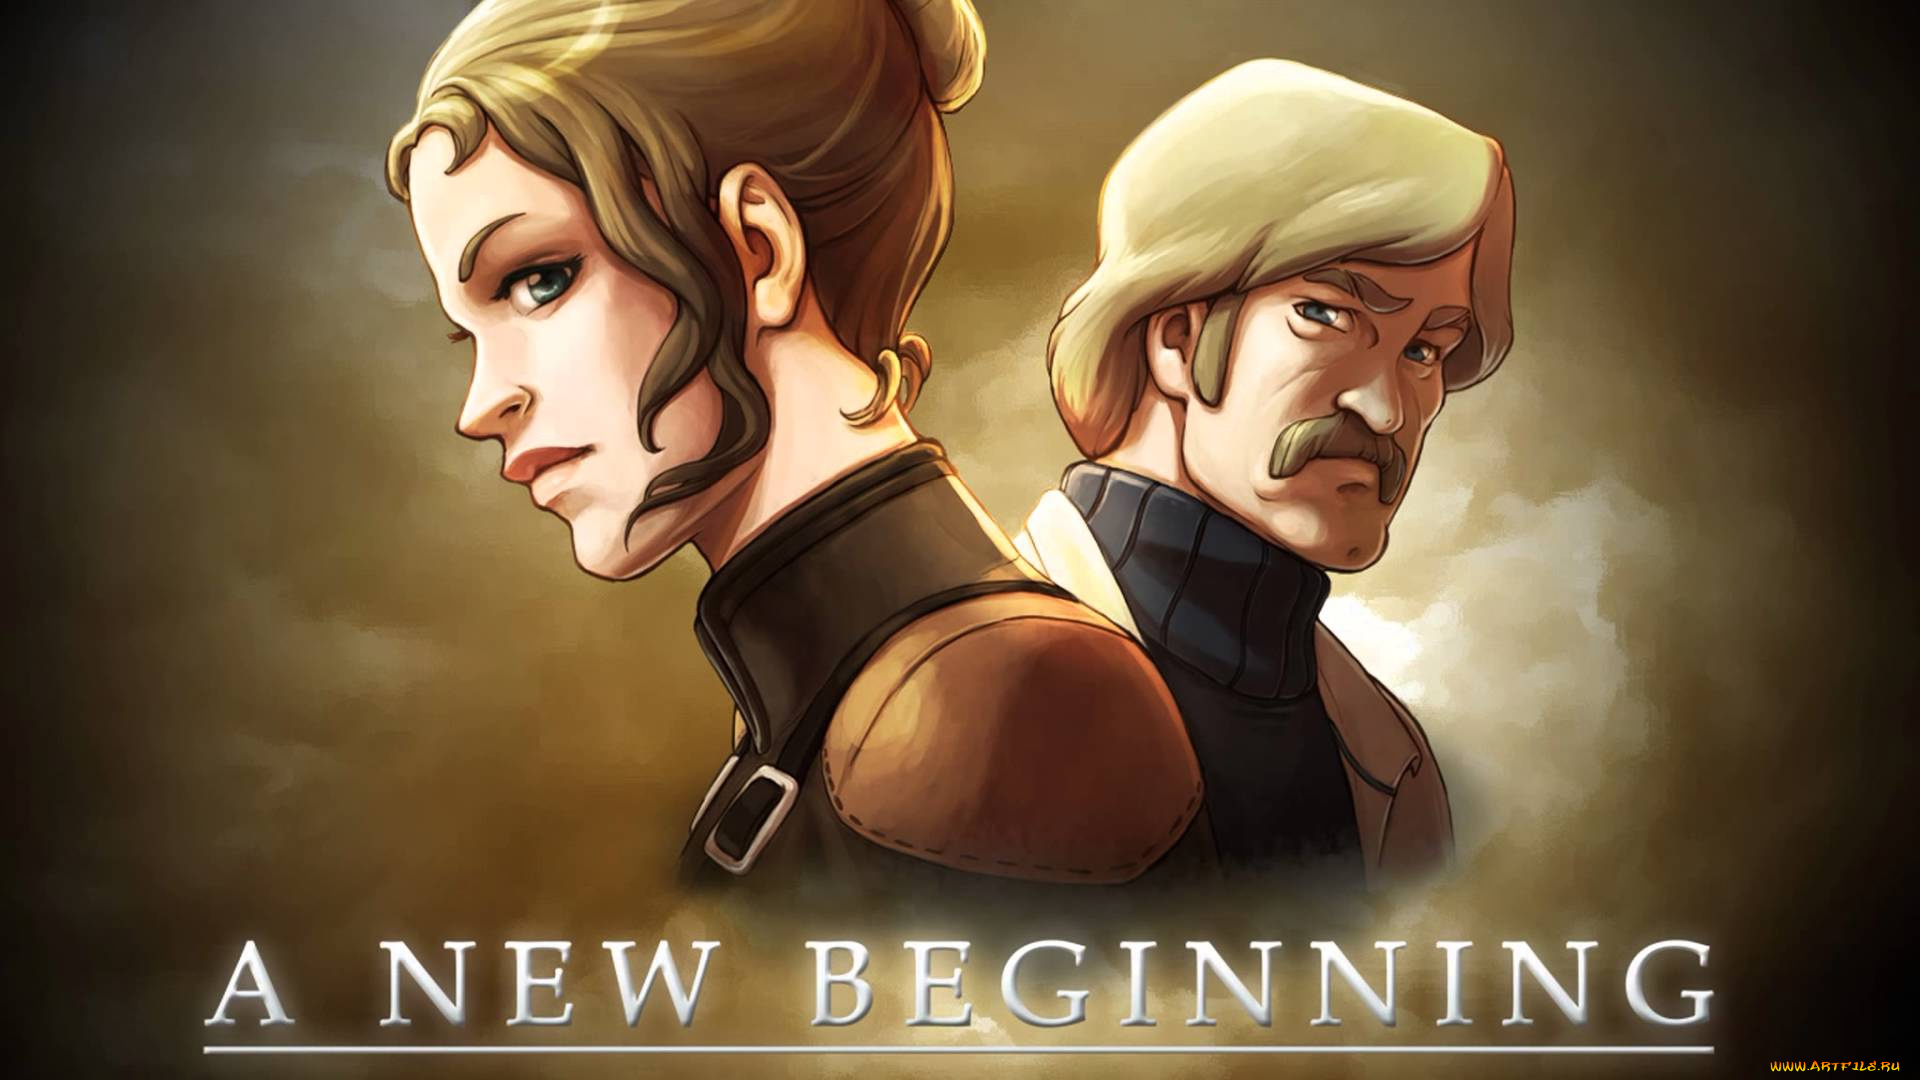 My new begun. A New beginning. A New beginning: послезавтра. A New beginning игра. A New beginning - Final Cut.